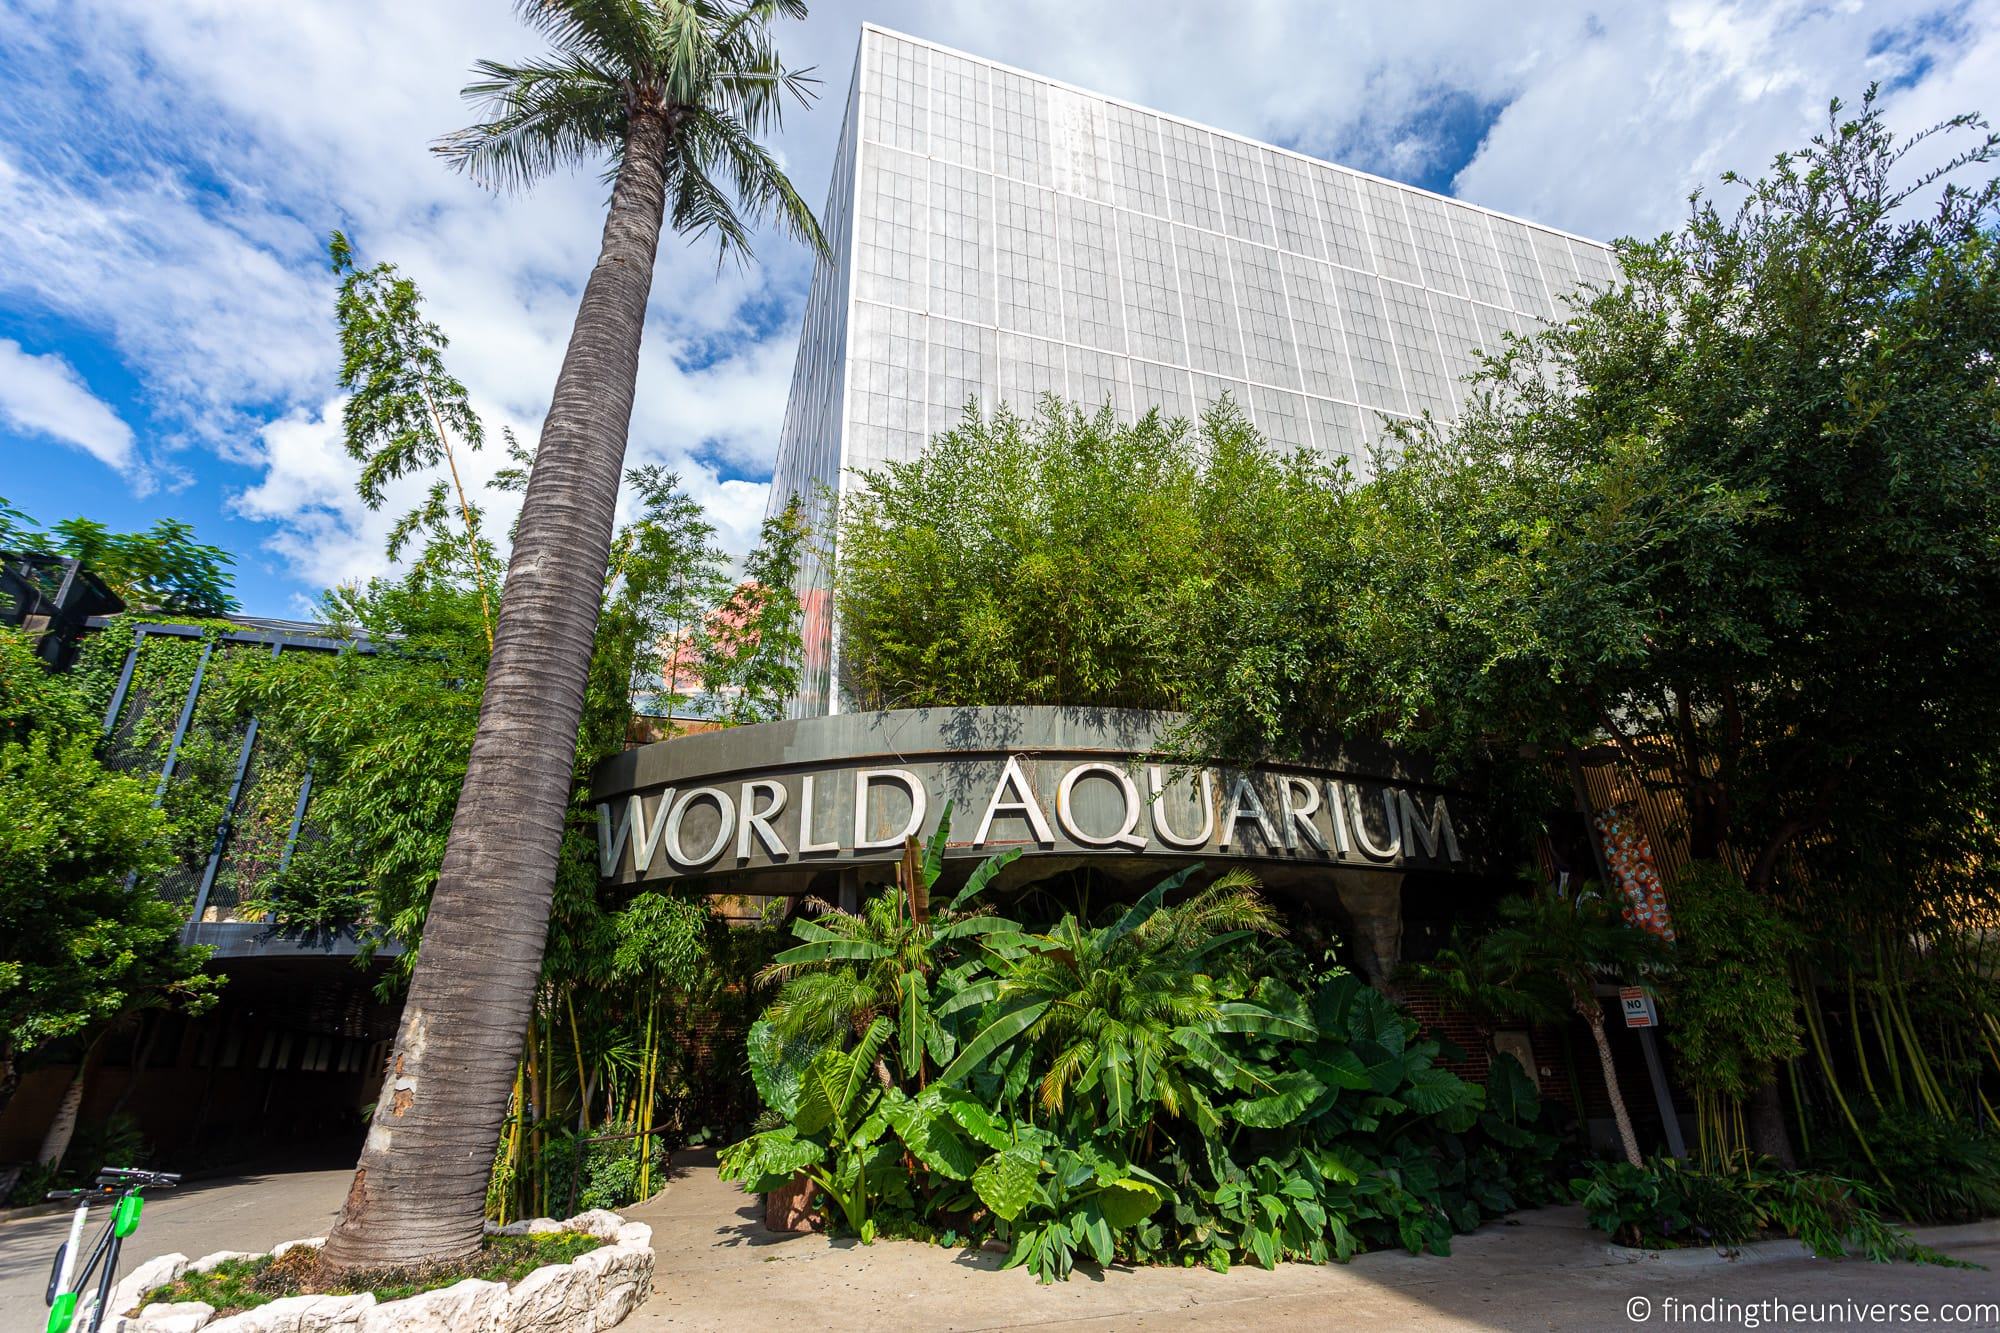 World Aquarium Dallas